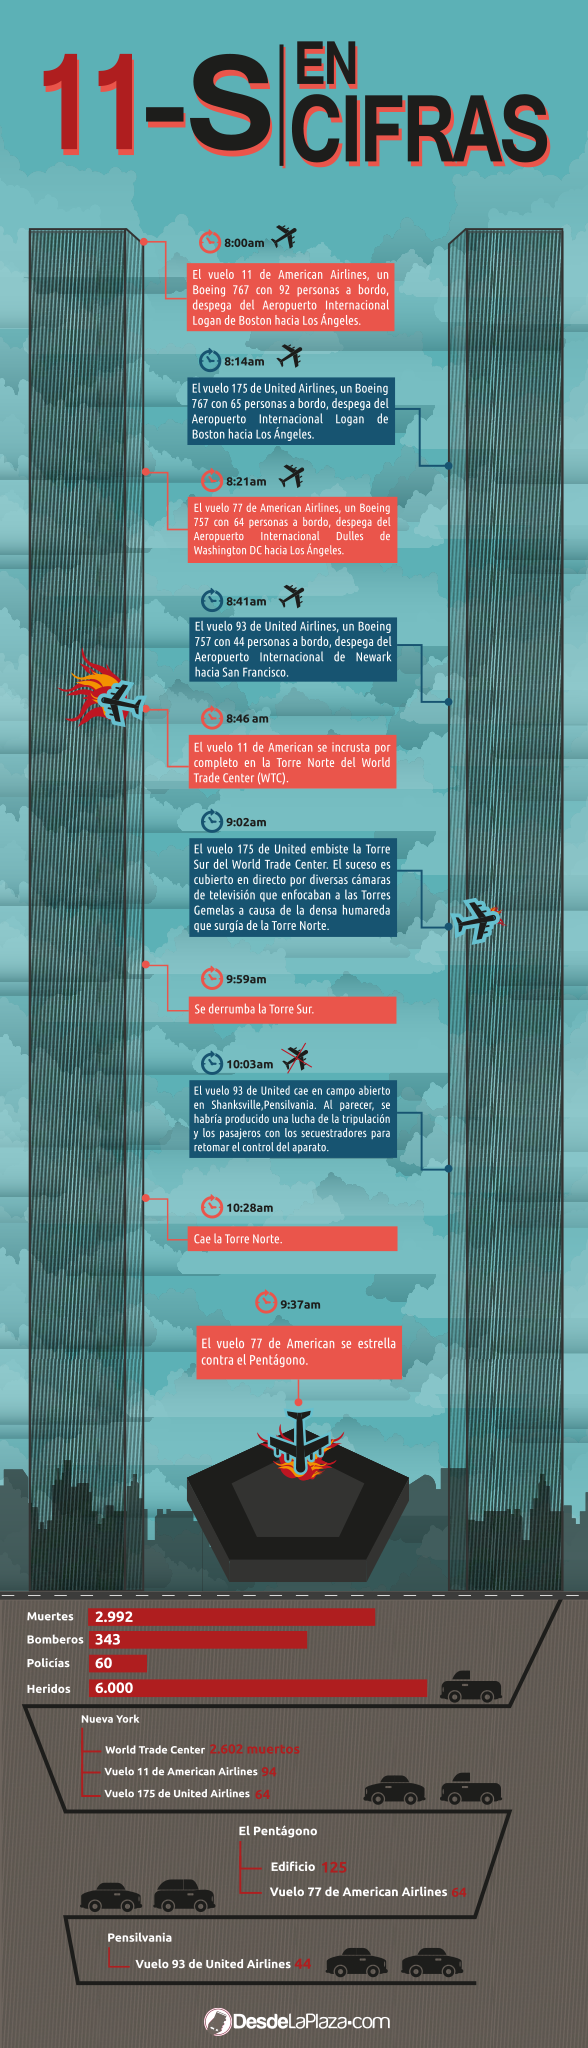 infografia-catastrofe-del-11-s